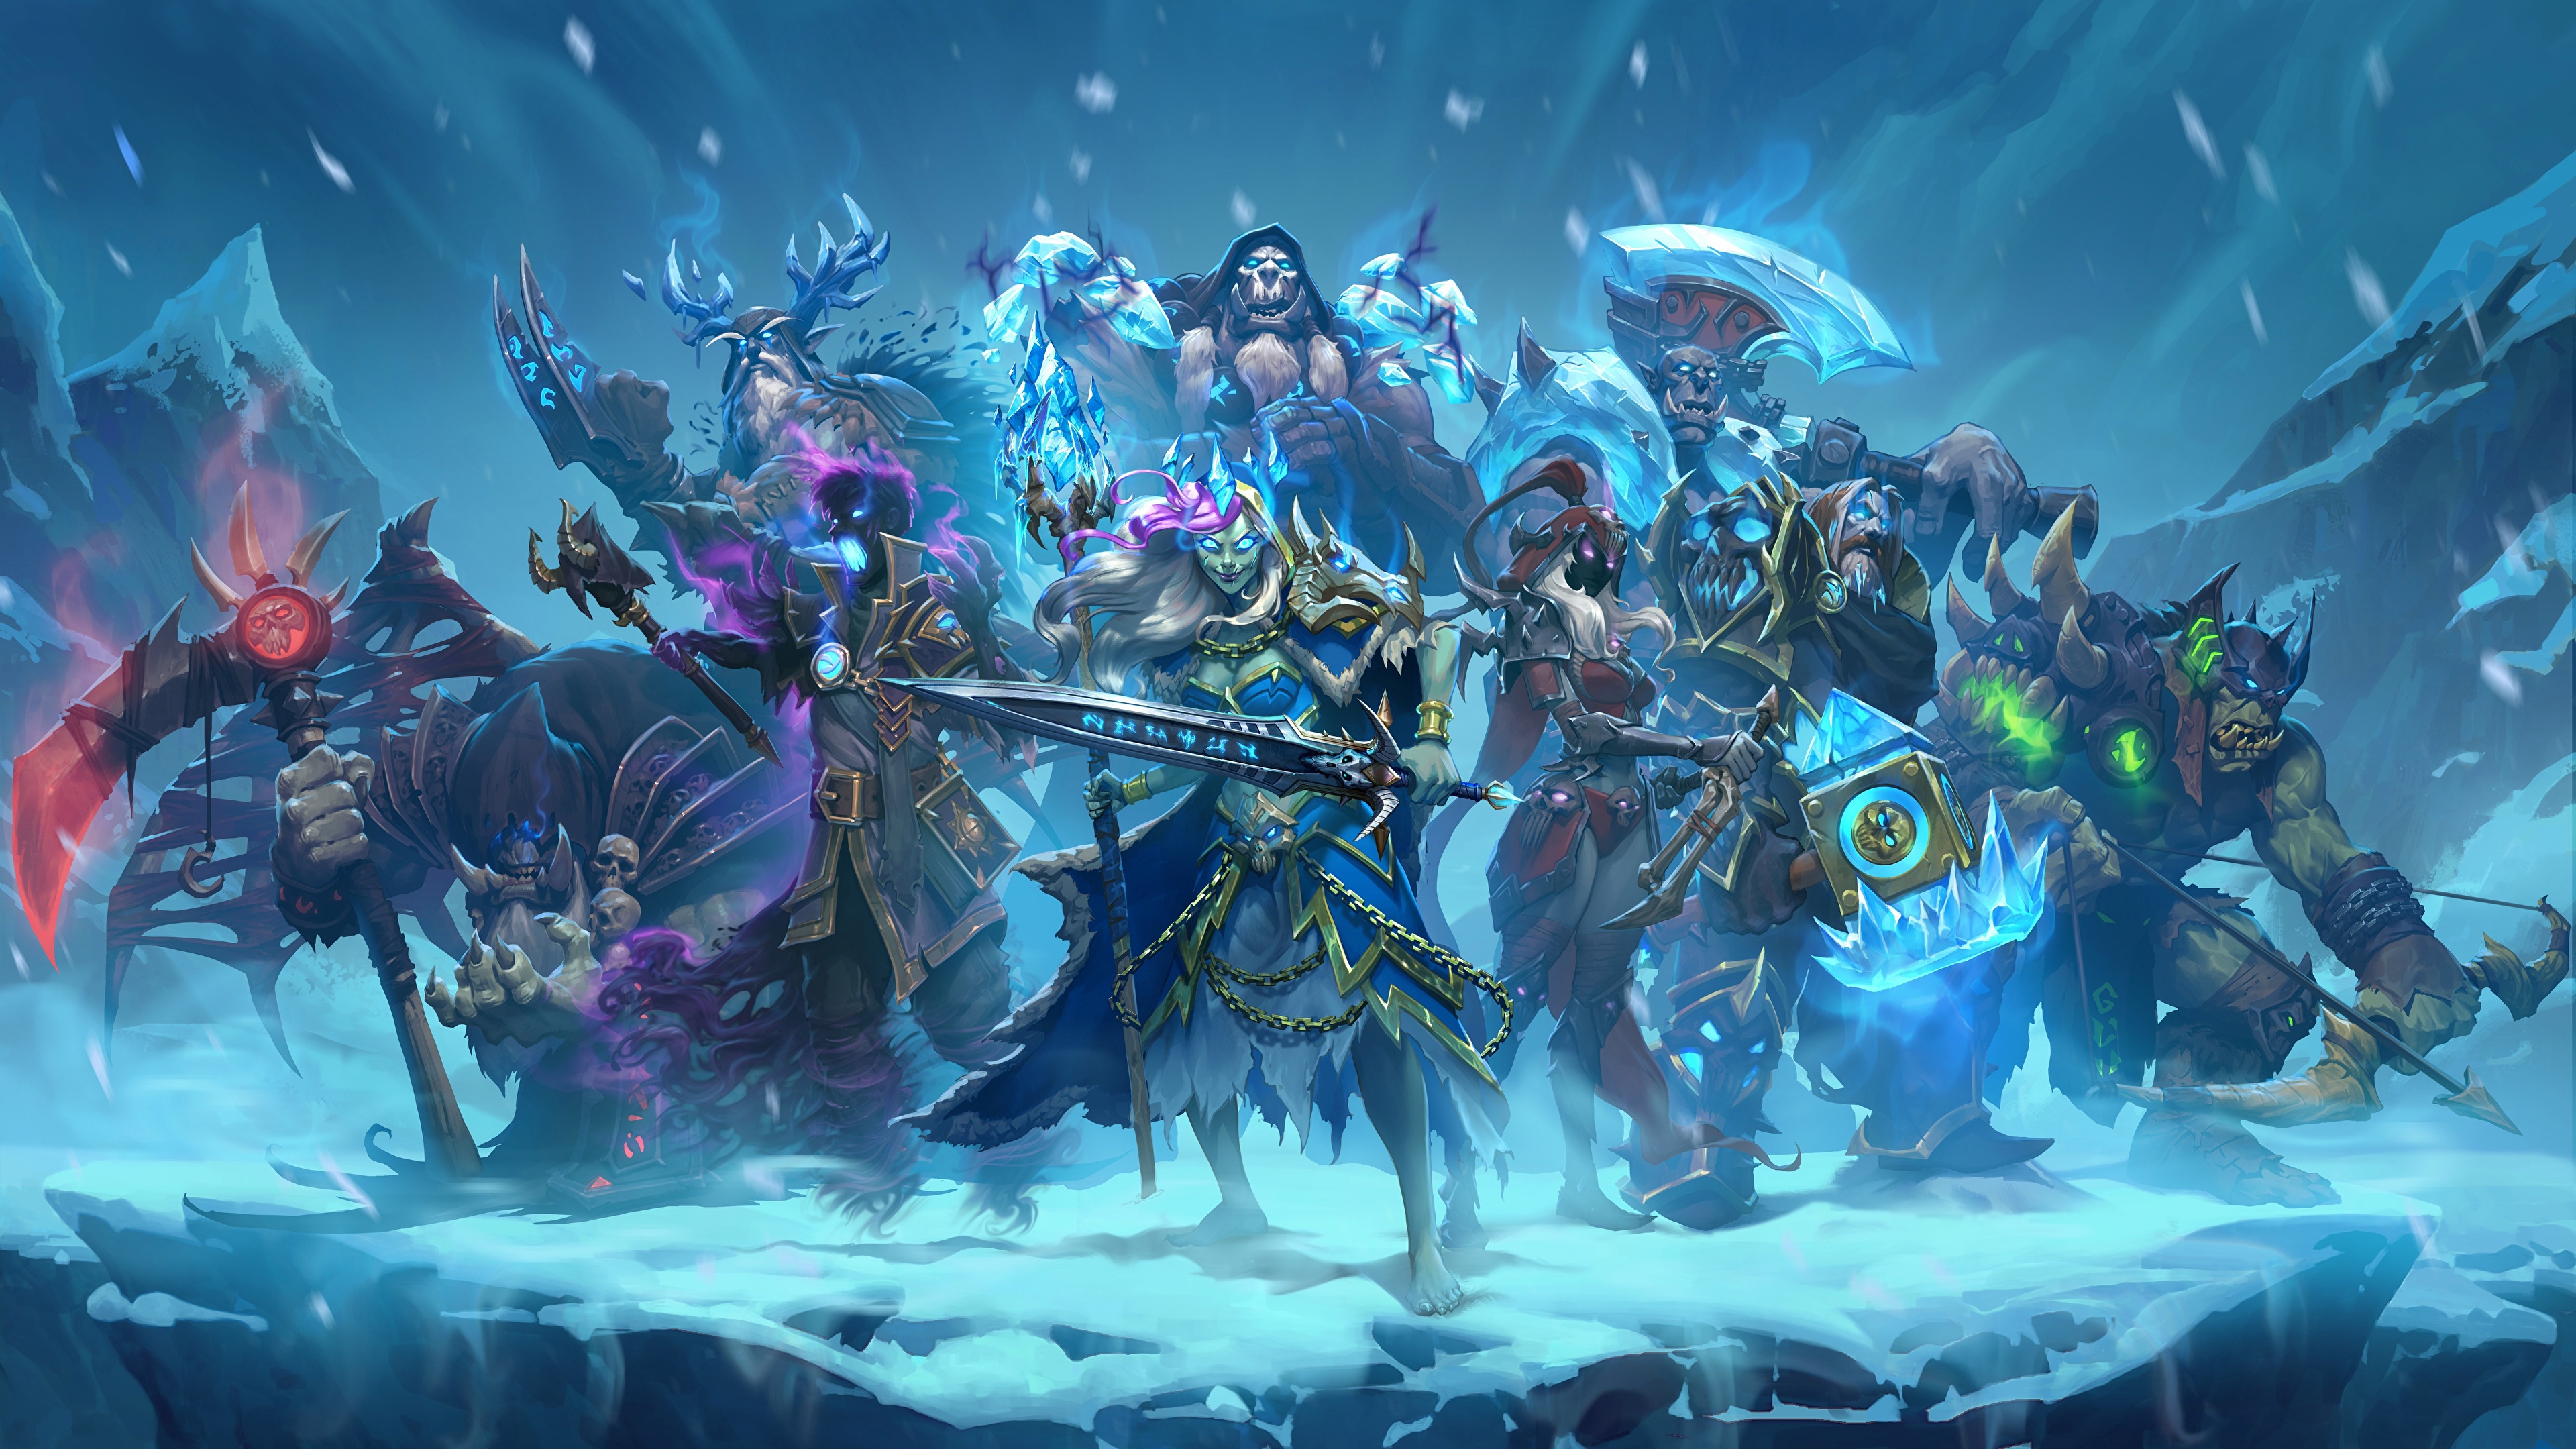 壁紙 3840x2160 ウォリアーズ Hearthstone Heroes Of Warcraft Knights Of The Frozen Throne 剣 ゲーム ファンタジー ダウンロード 写真